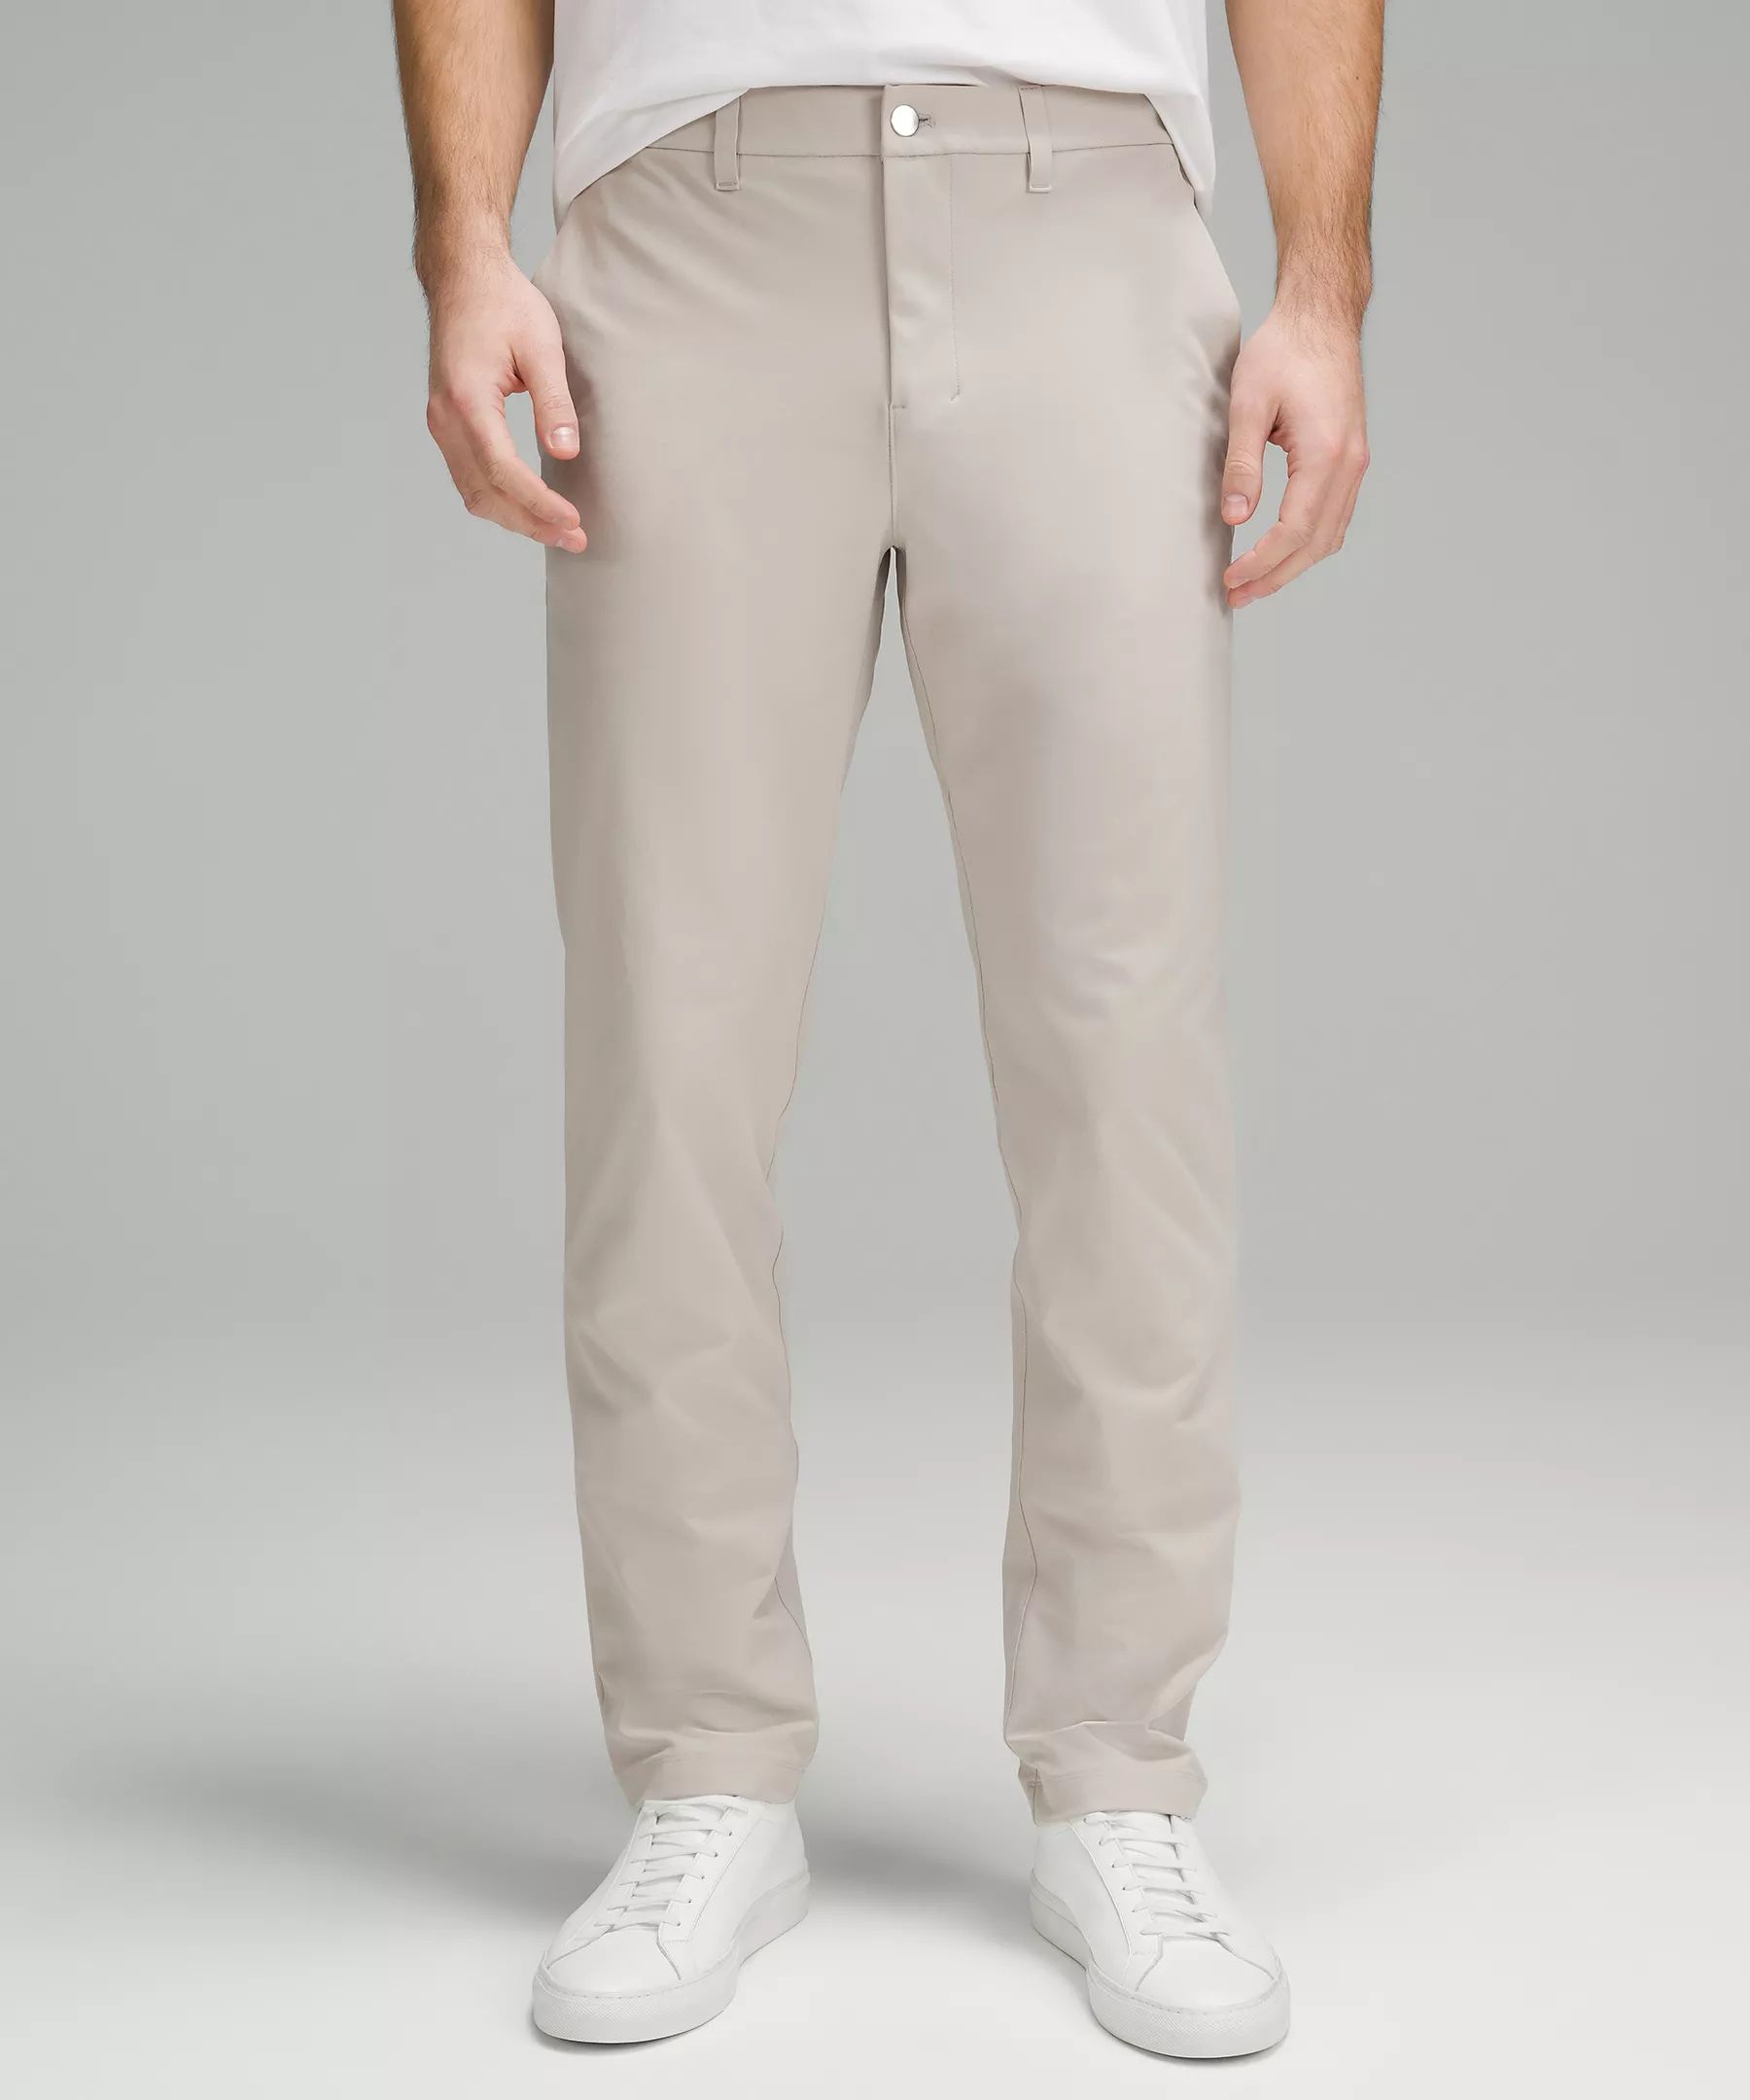 ABC Classic-Fit Trouser 32"L | Lululemon (US)